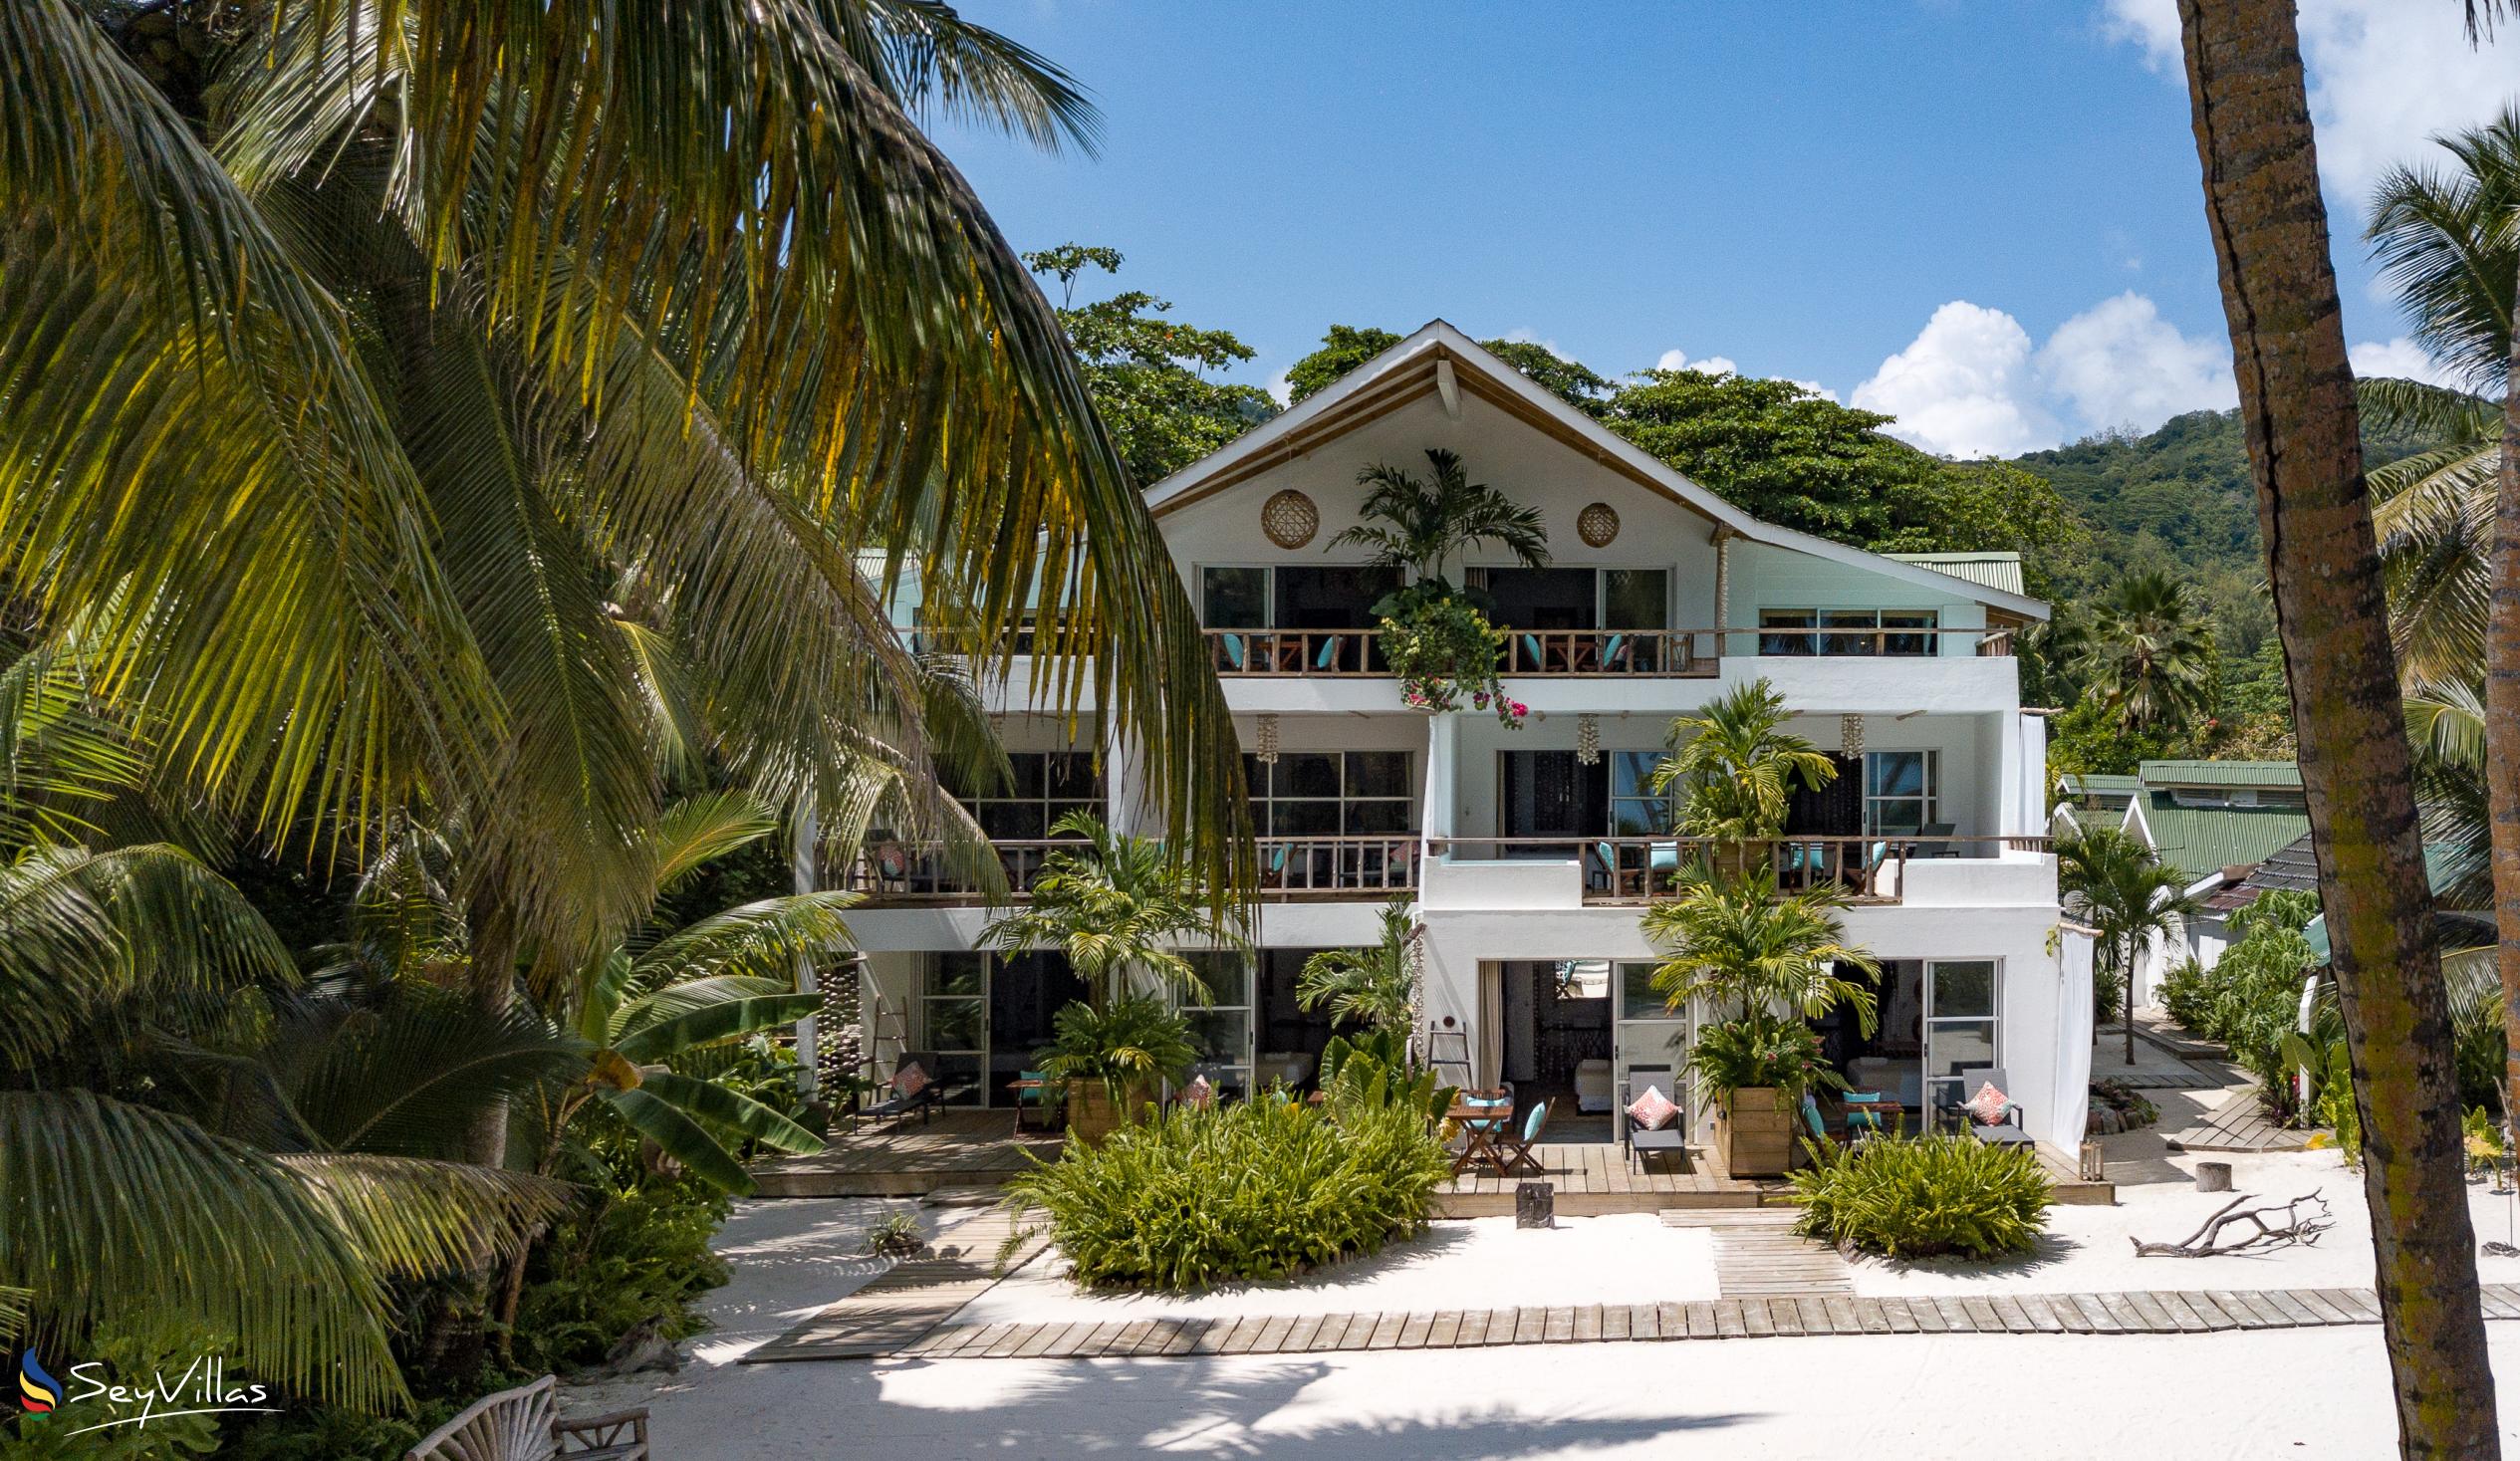 Foto 92: Bliss Hotel Praslin - Beach House - Chambre Beach Garden - Praslin (Seychelles)